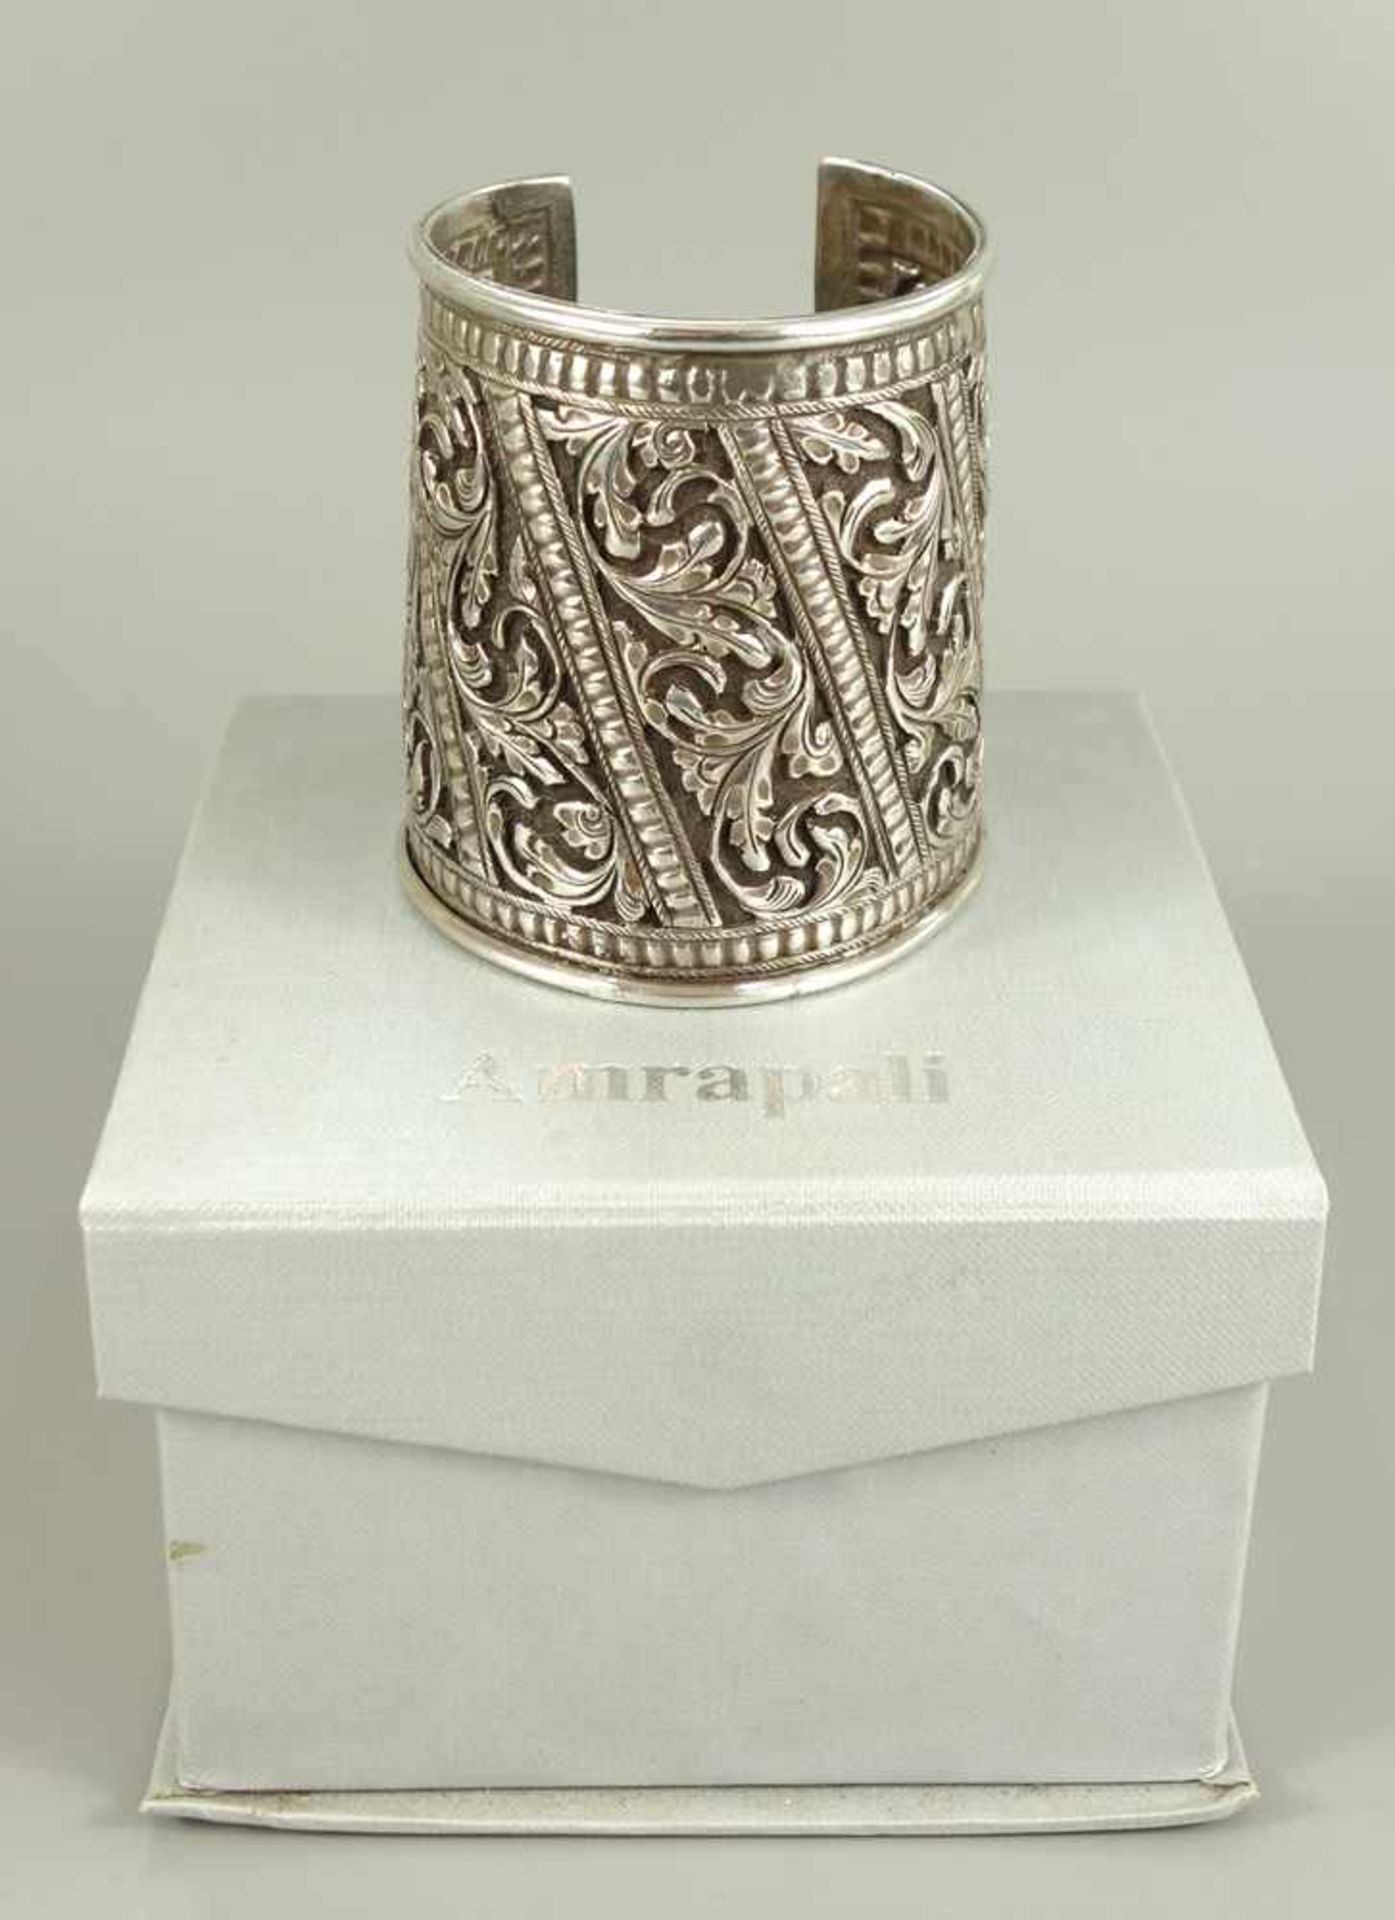 Armmanschette, Amrapali, Indien, 925er Silber, umlaufend florales Rollwerk, H.7,7cm, D. von ca. 6